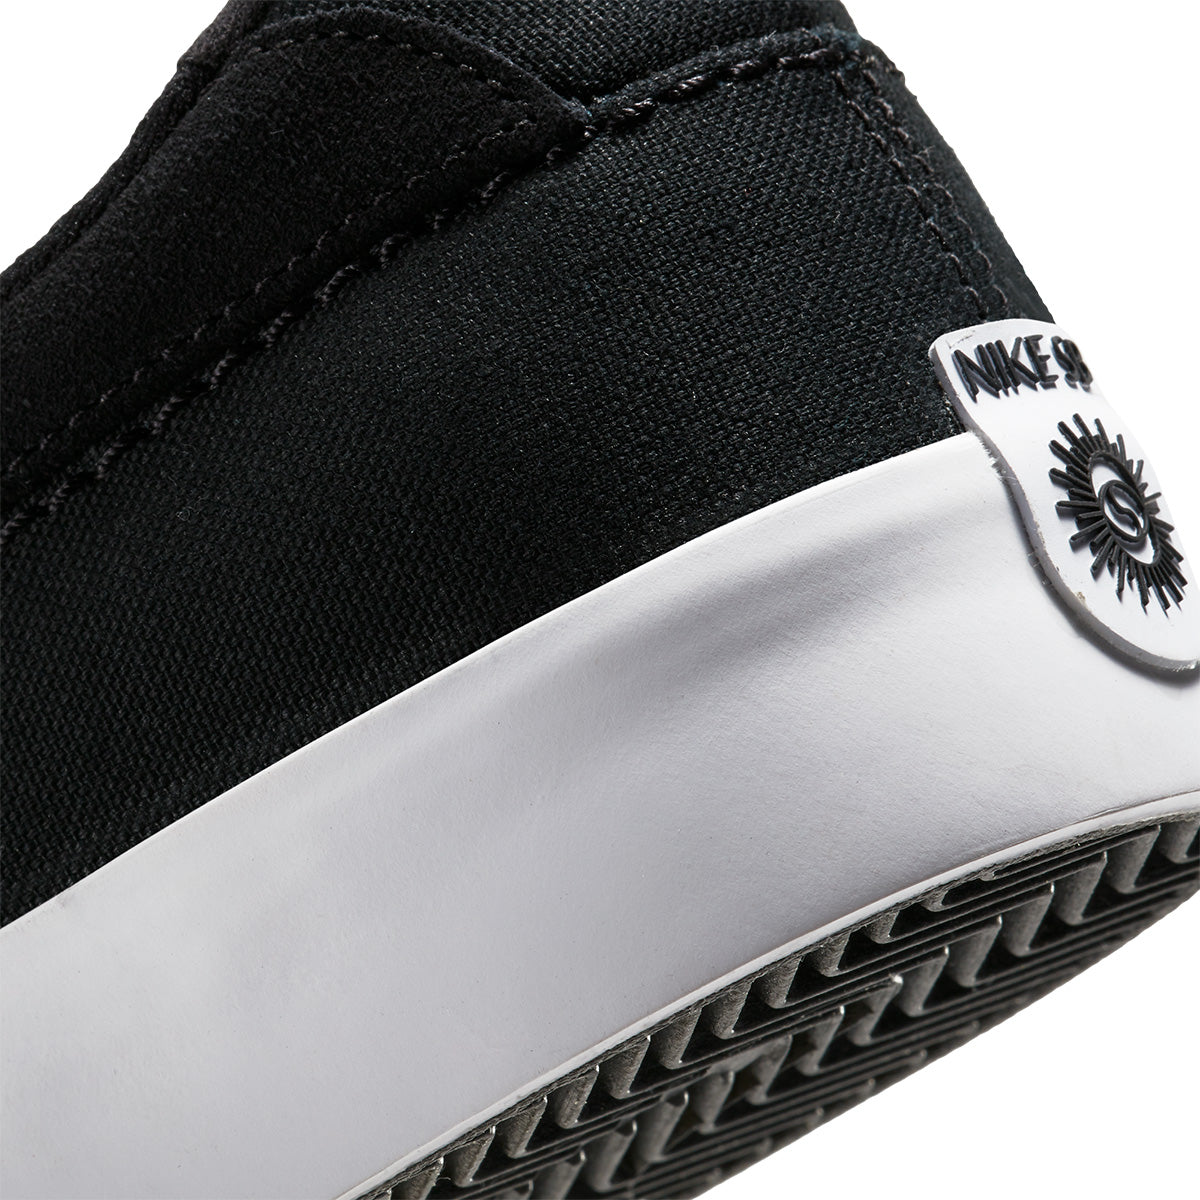 Nike SB Shane Pro Shoe - Black/White-Black